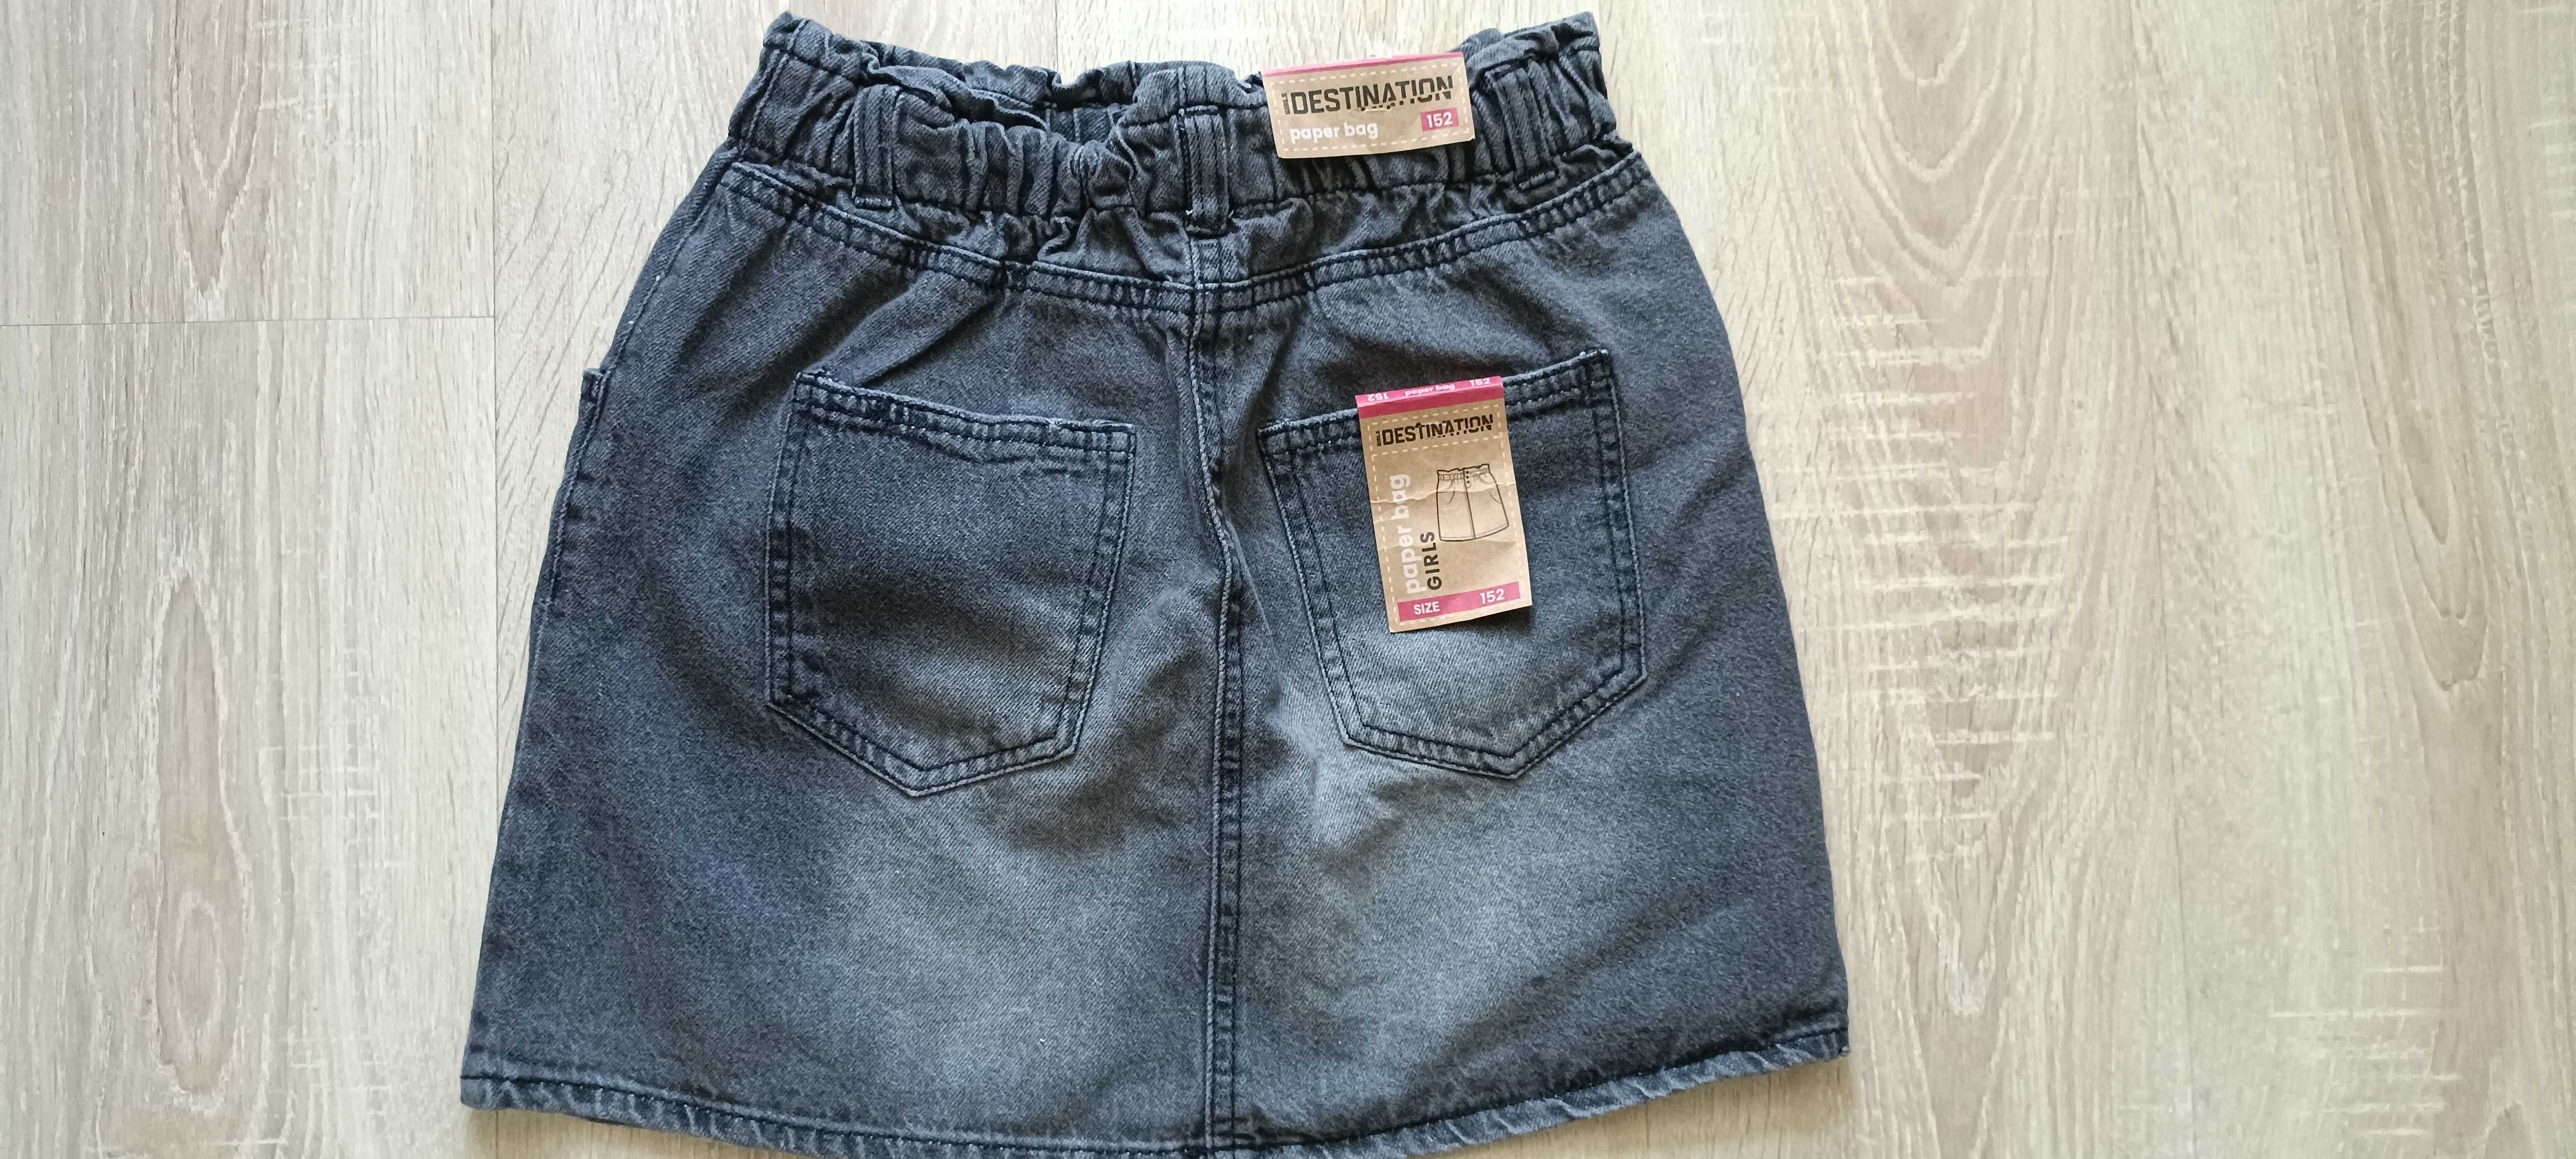 spodniczka jeans